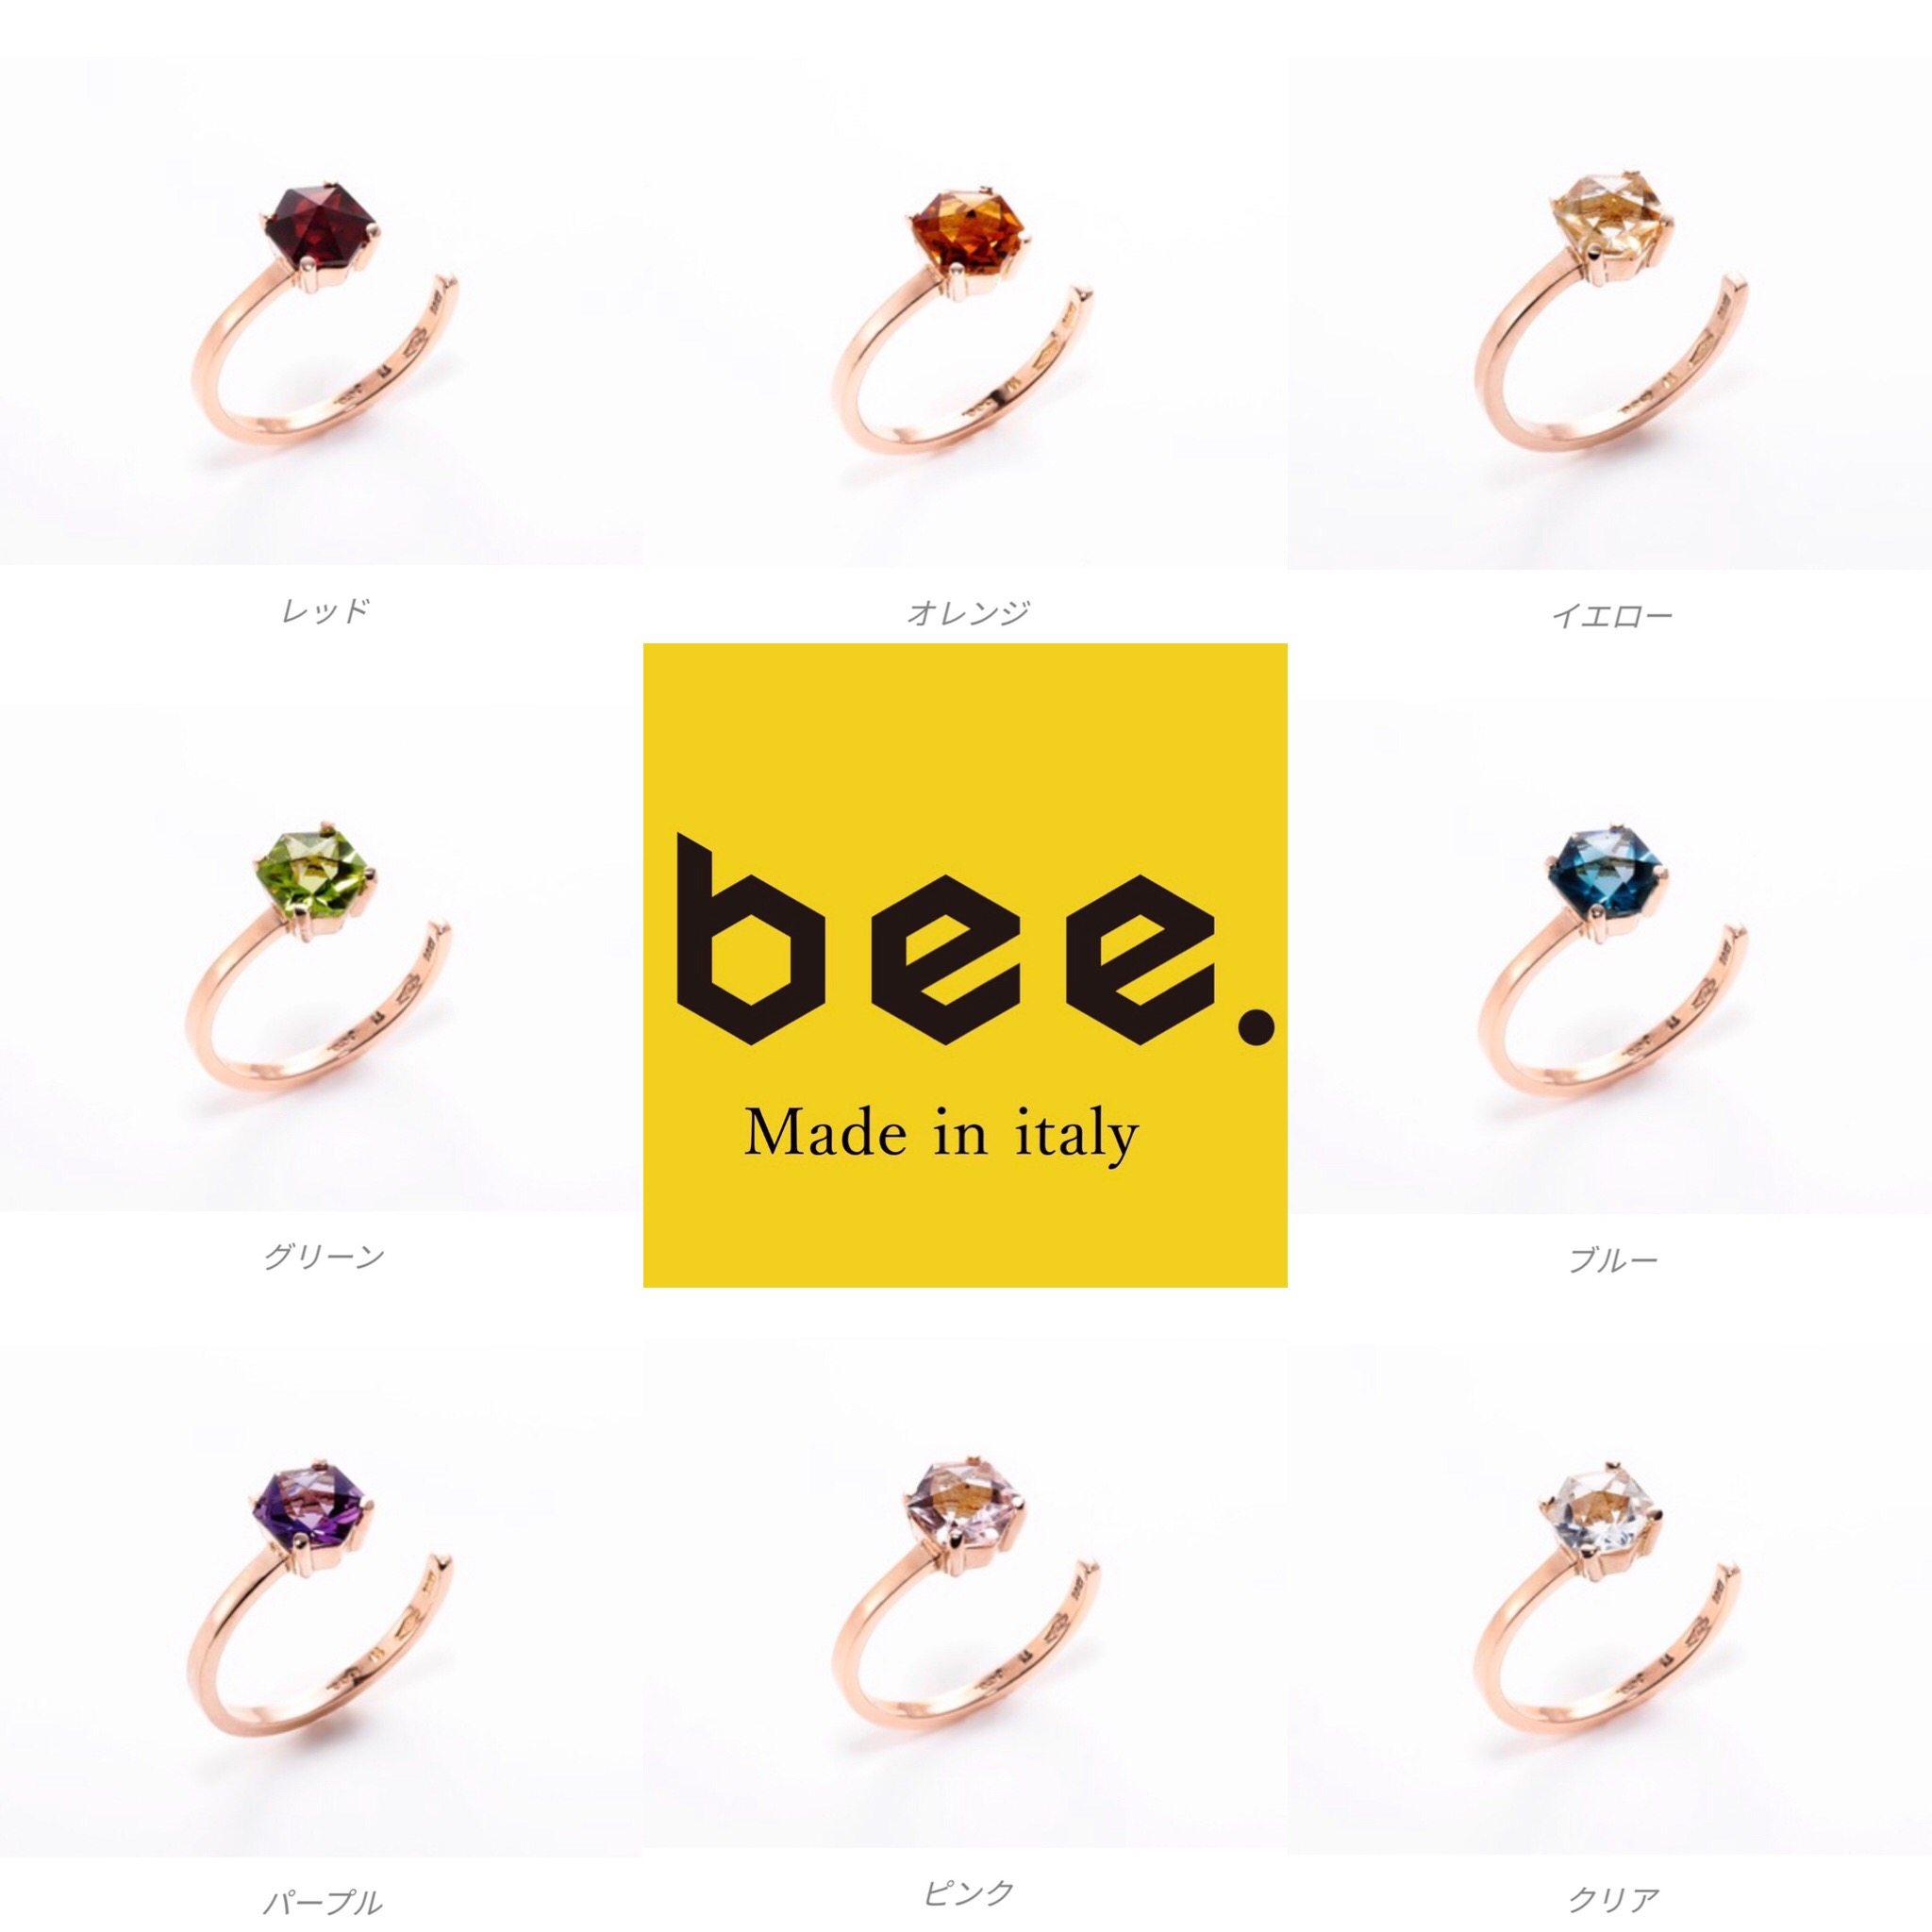 デザインで選ぶ・カラーストーンリング 「 bee 」| 重ね付けが美しいカラーストーンリング ブランド「 bee 」